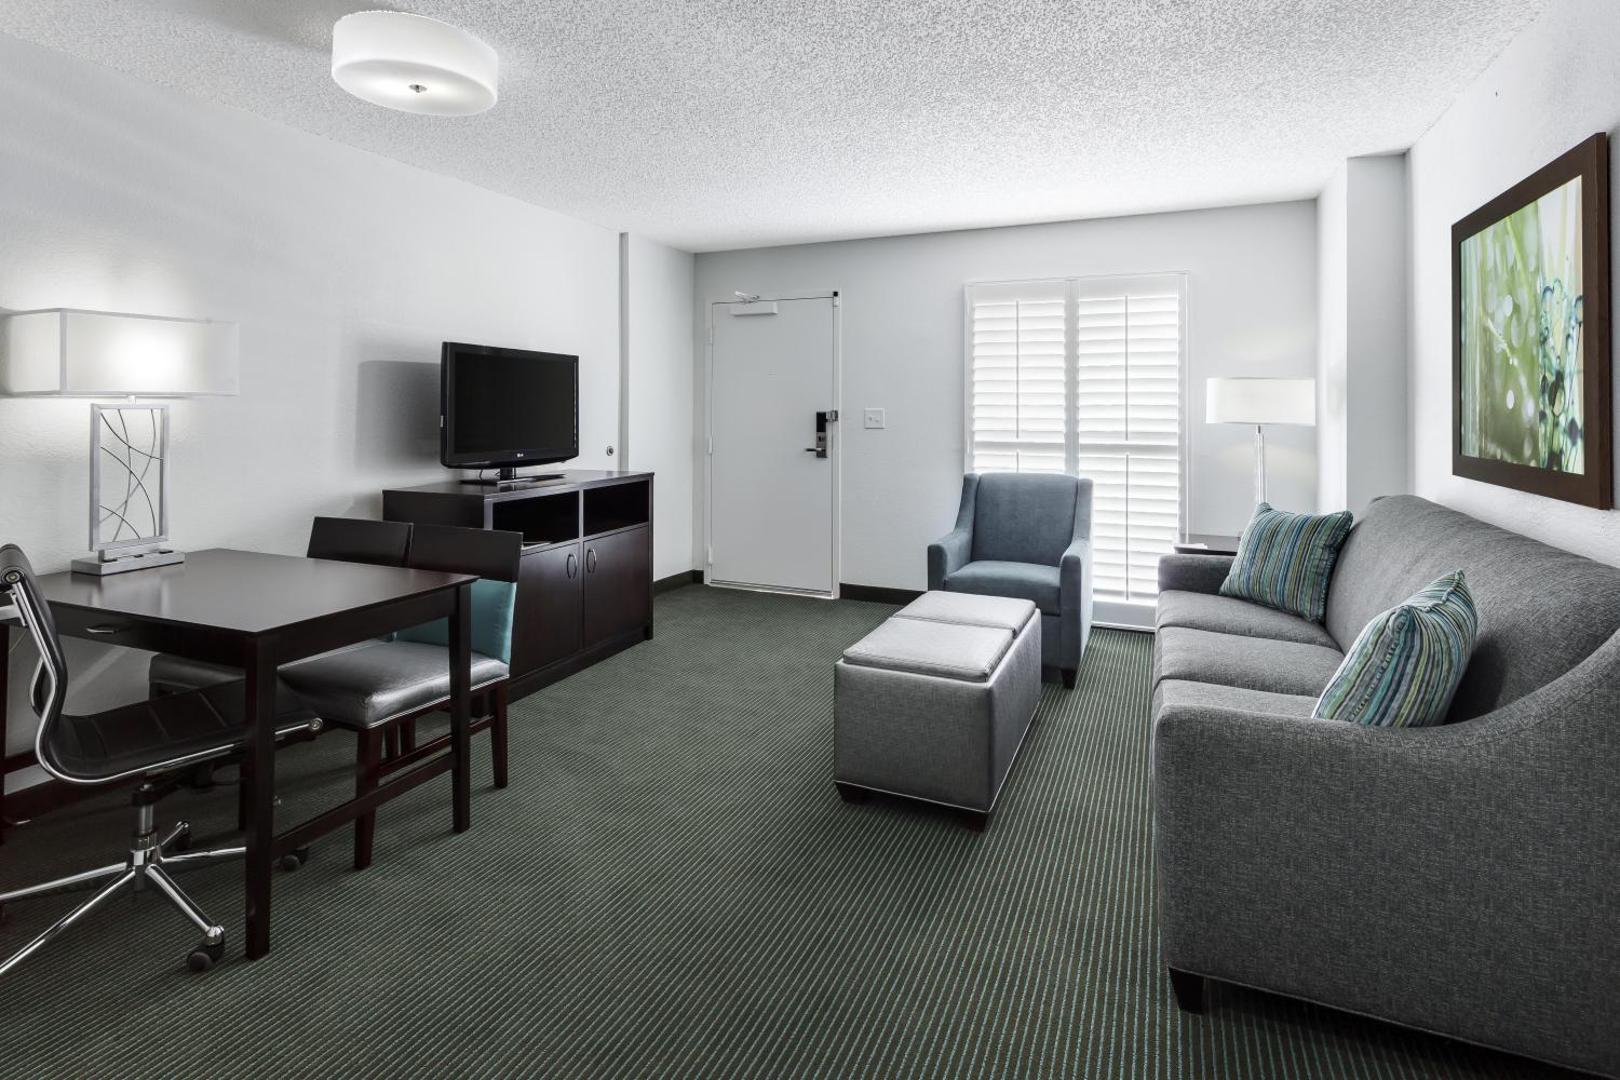 Embassy Suites by Hilton Orlando Lake Buena Vista Resort